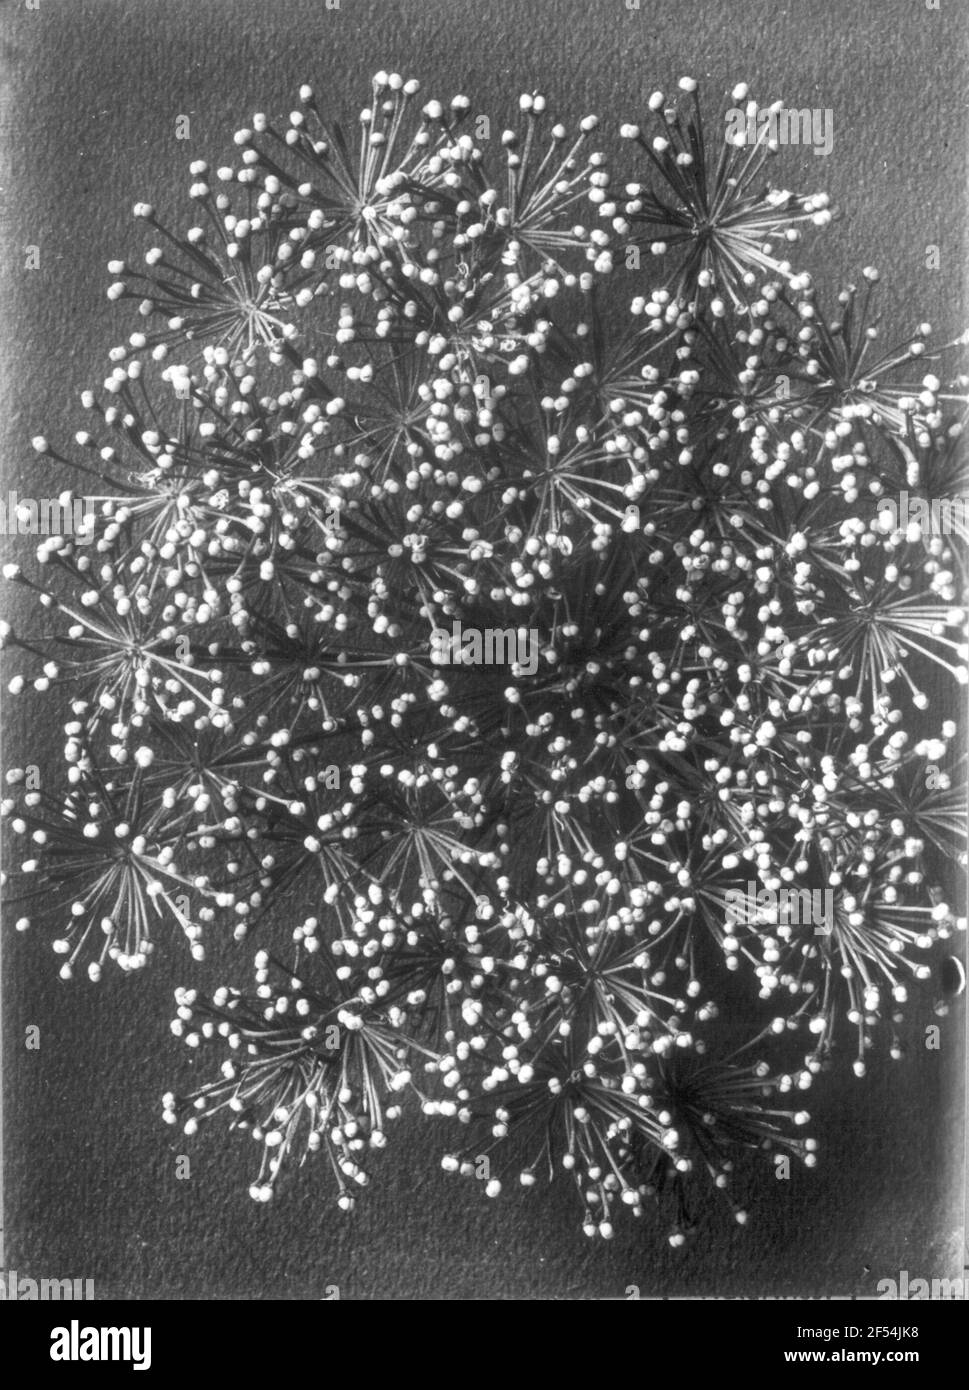 Swamp burning sowing (Cnidium Venosum Koch, C. Dubium part.), Part of the fruit material Swamp burning sowing (Cnidium Venosum Koch, C. Dubium part.), Part of the fruit material Stock Photo